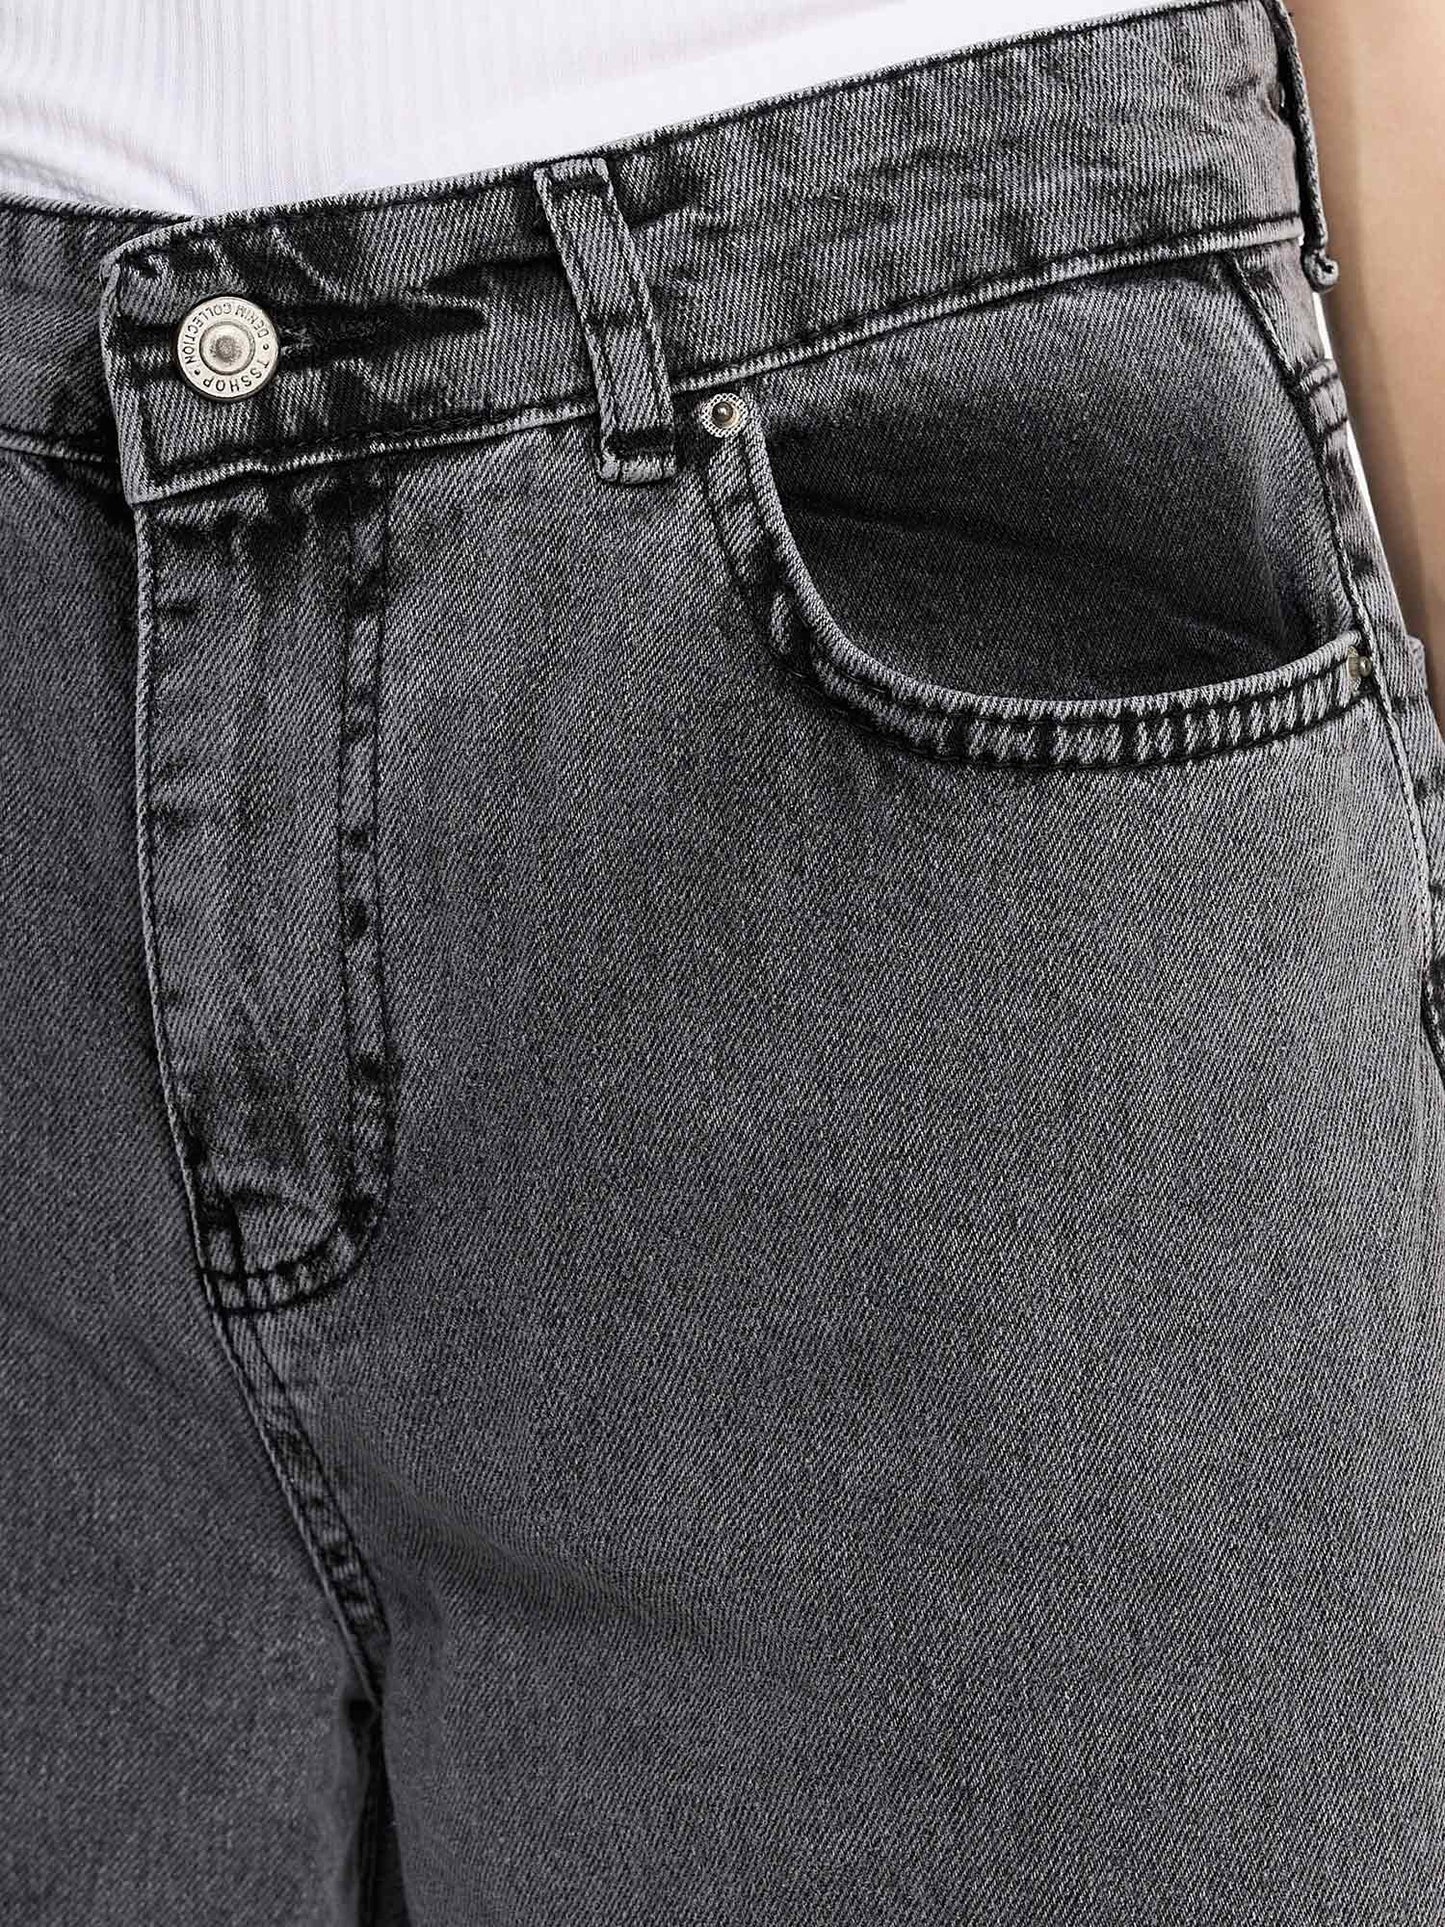 Tazzio Damen Bootcut Jeans F128